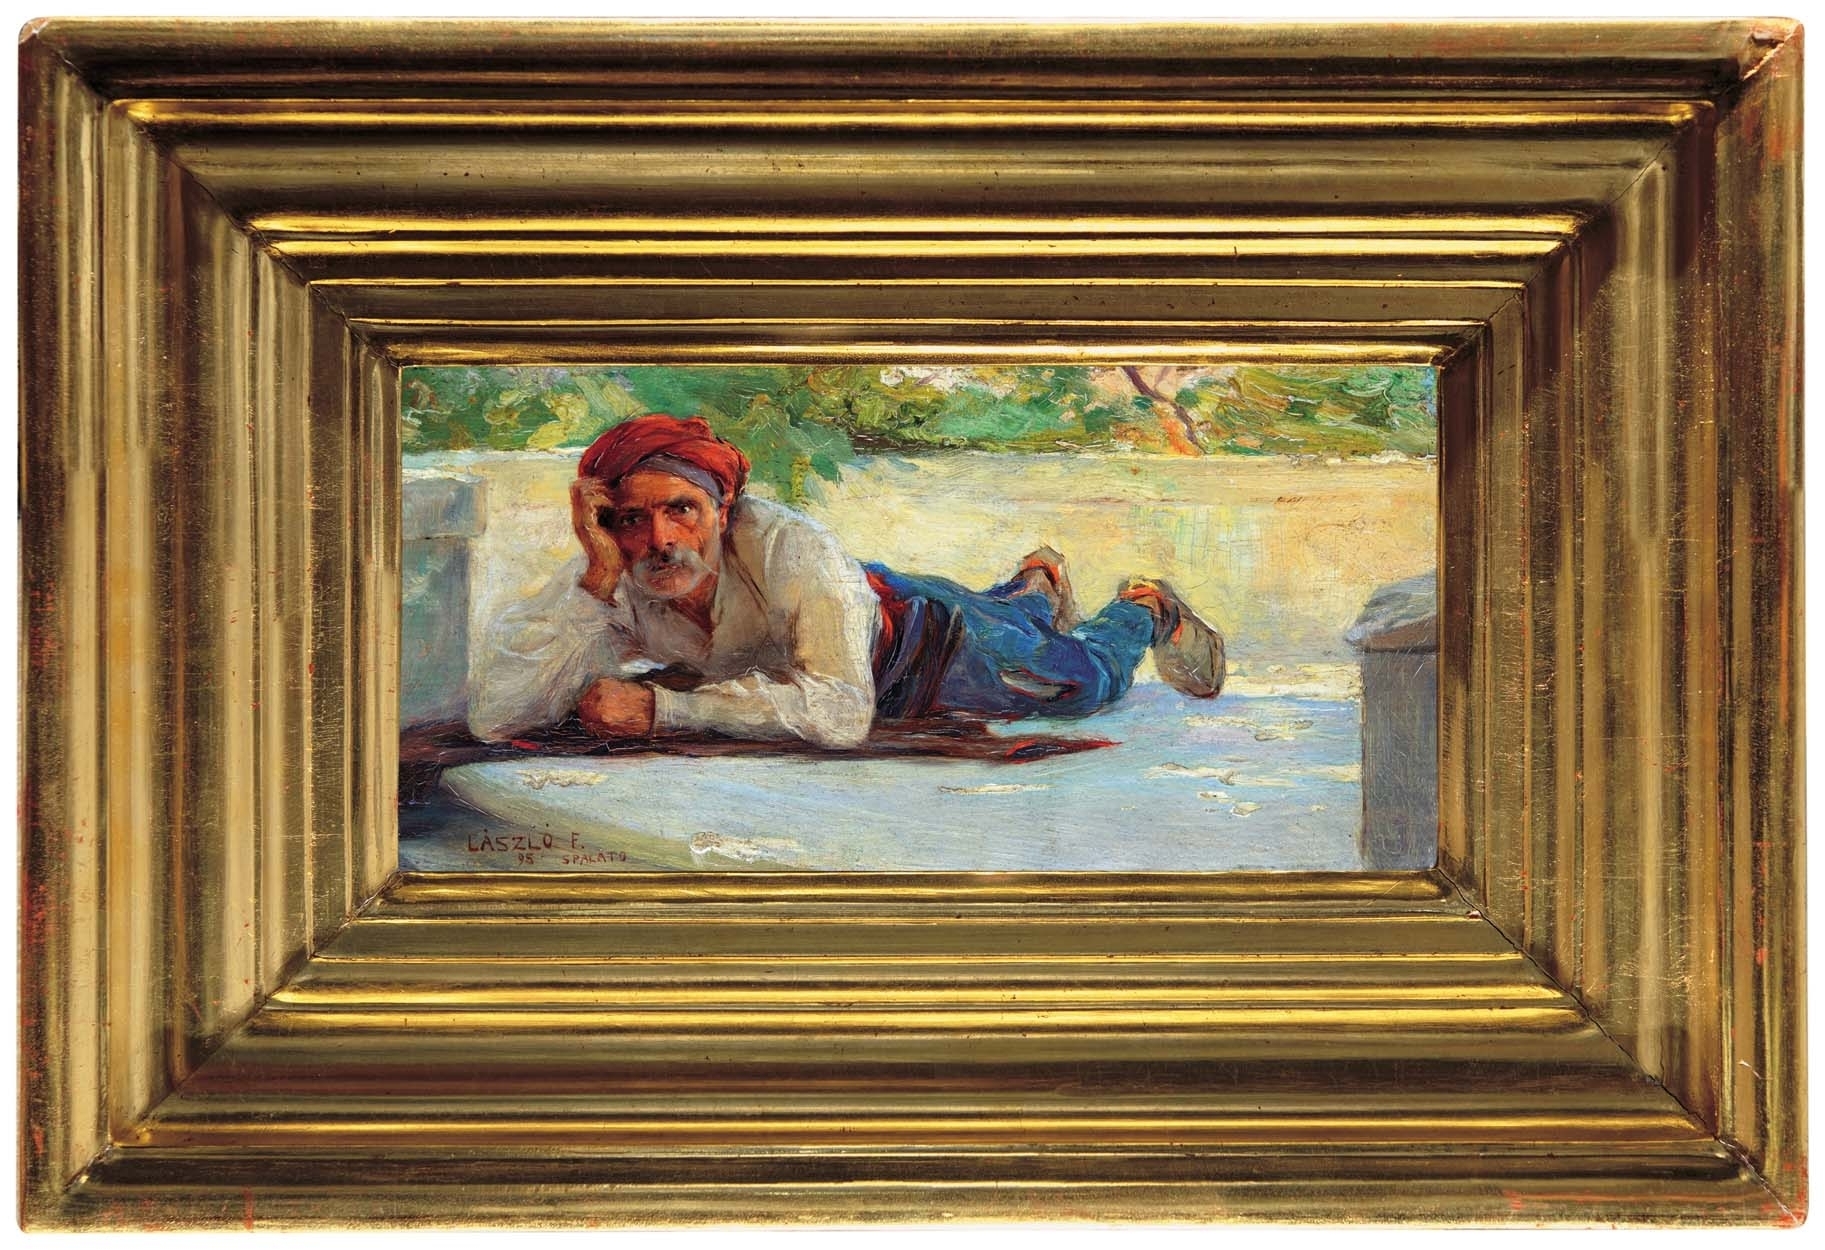 László Fülöp (1869-1937) The Dalmation man (Man in a Red Turban), 1895